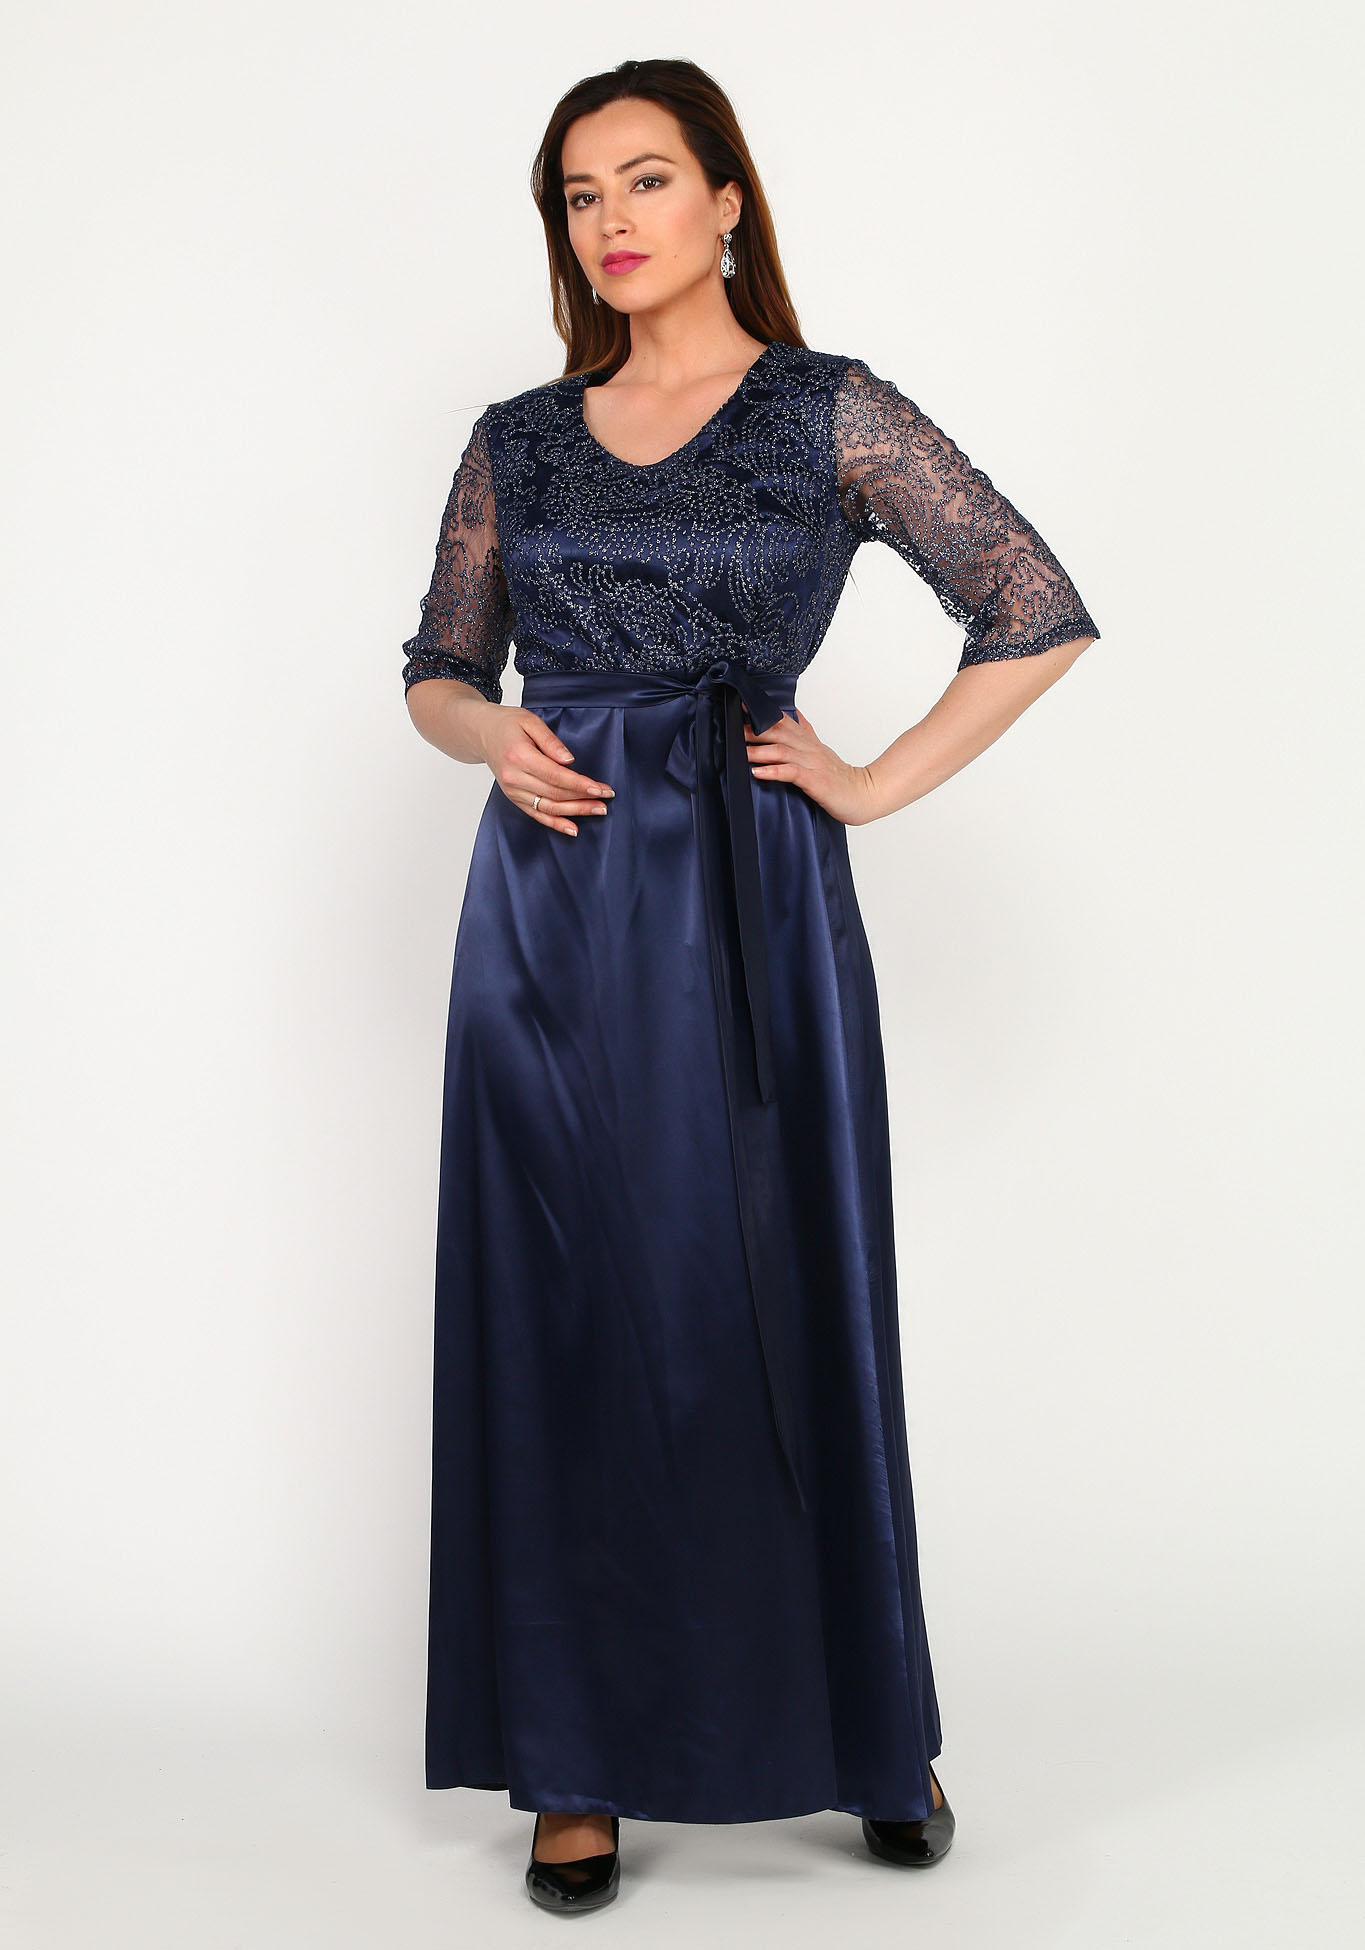 Платье вечернее в пол с кружевной отделкой Bel Fiore, размер 50, цвет синий - фото 5